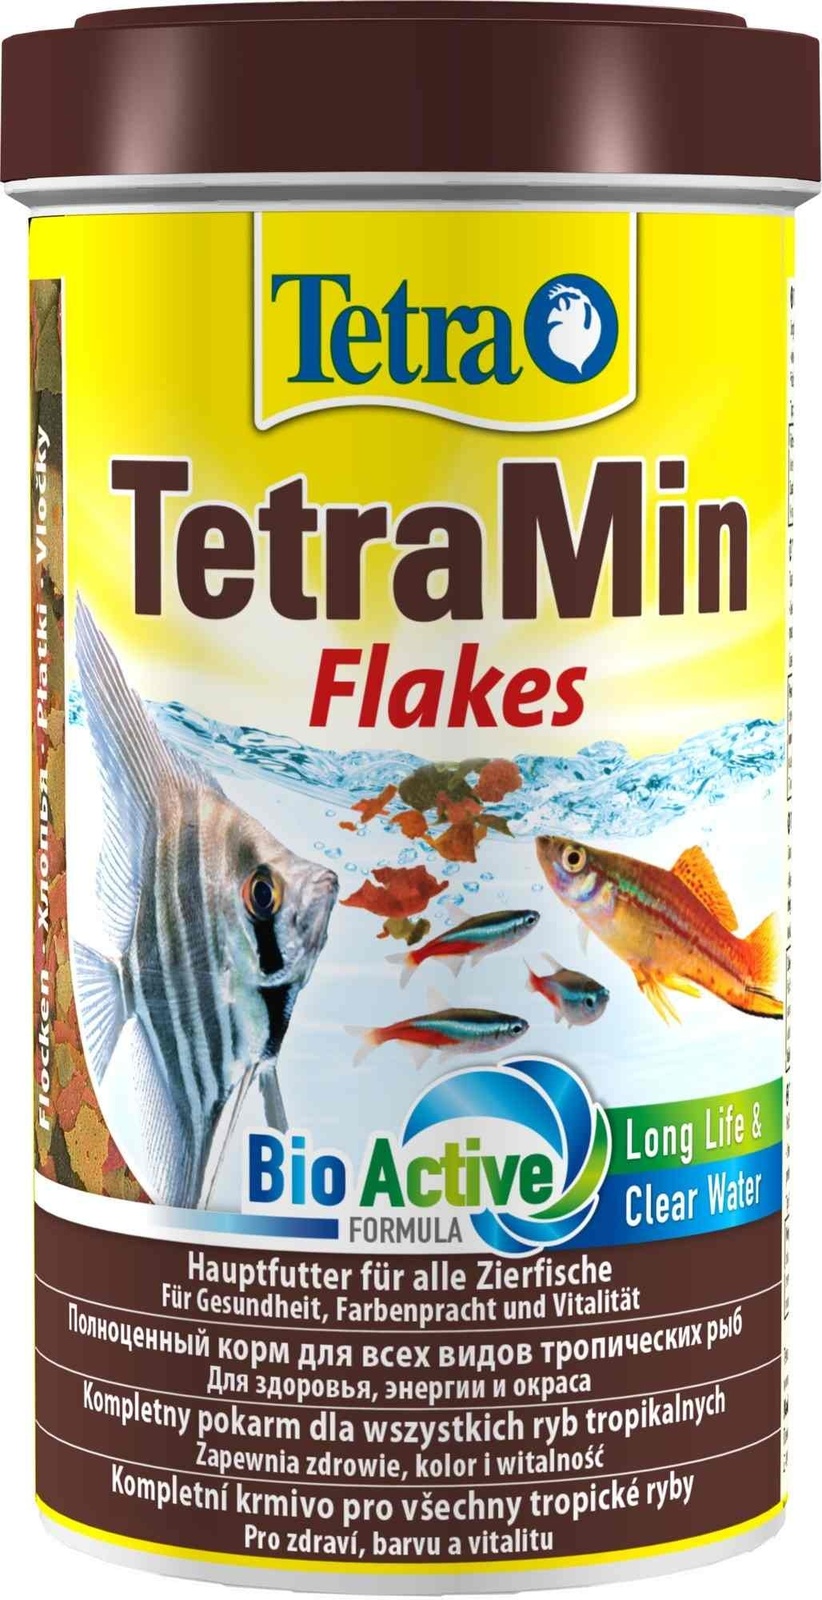 Tetra (корма) Tetra (корма) корм для всех видов тропических рыб. хлопья TetraMin Flakes (100 г) tetra корма tetra корма корм для всех видов рыб хлопья 20 г